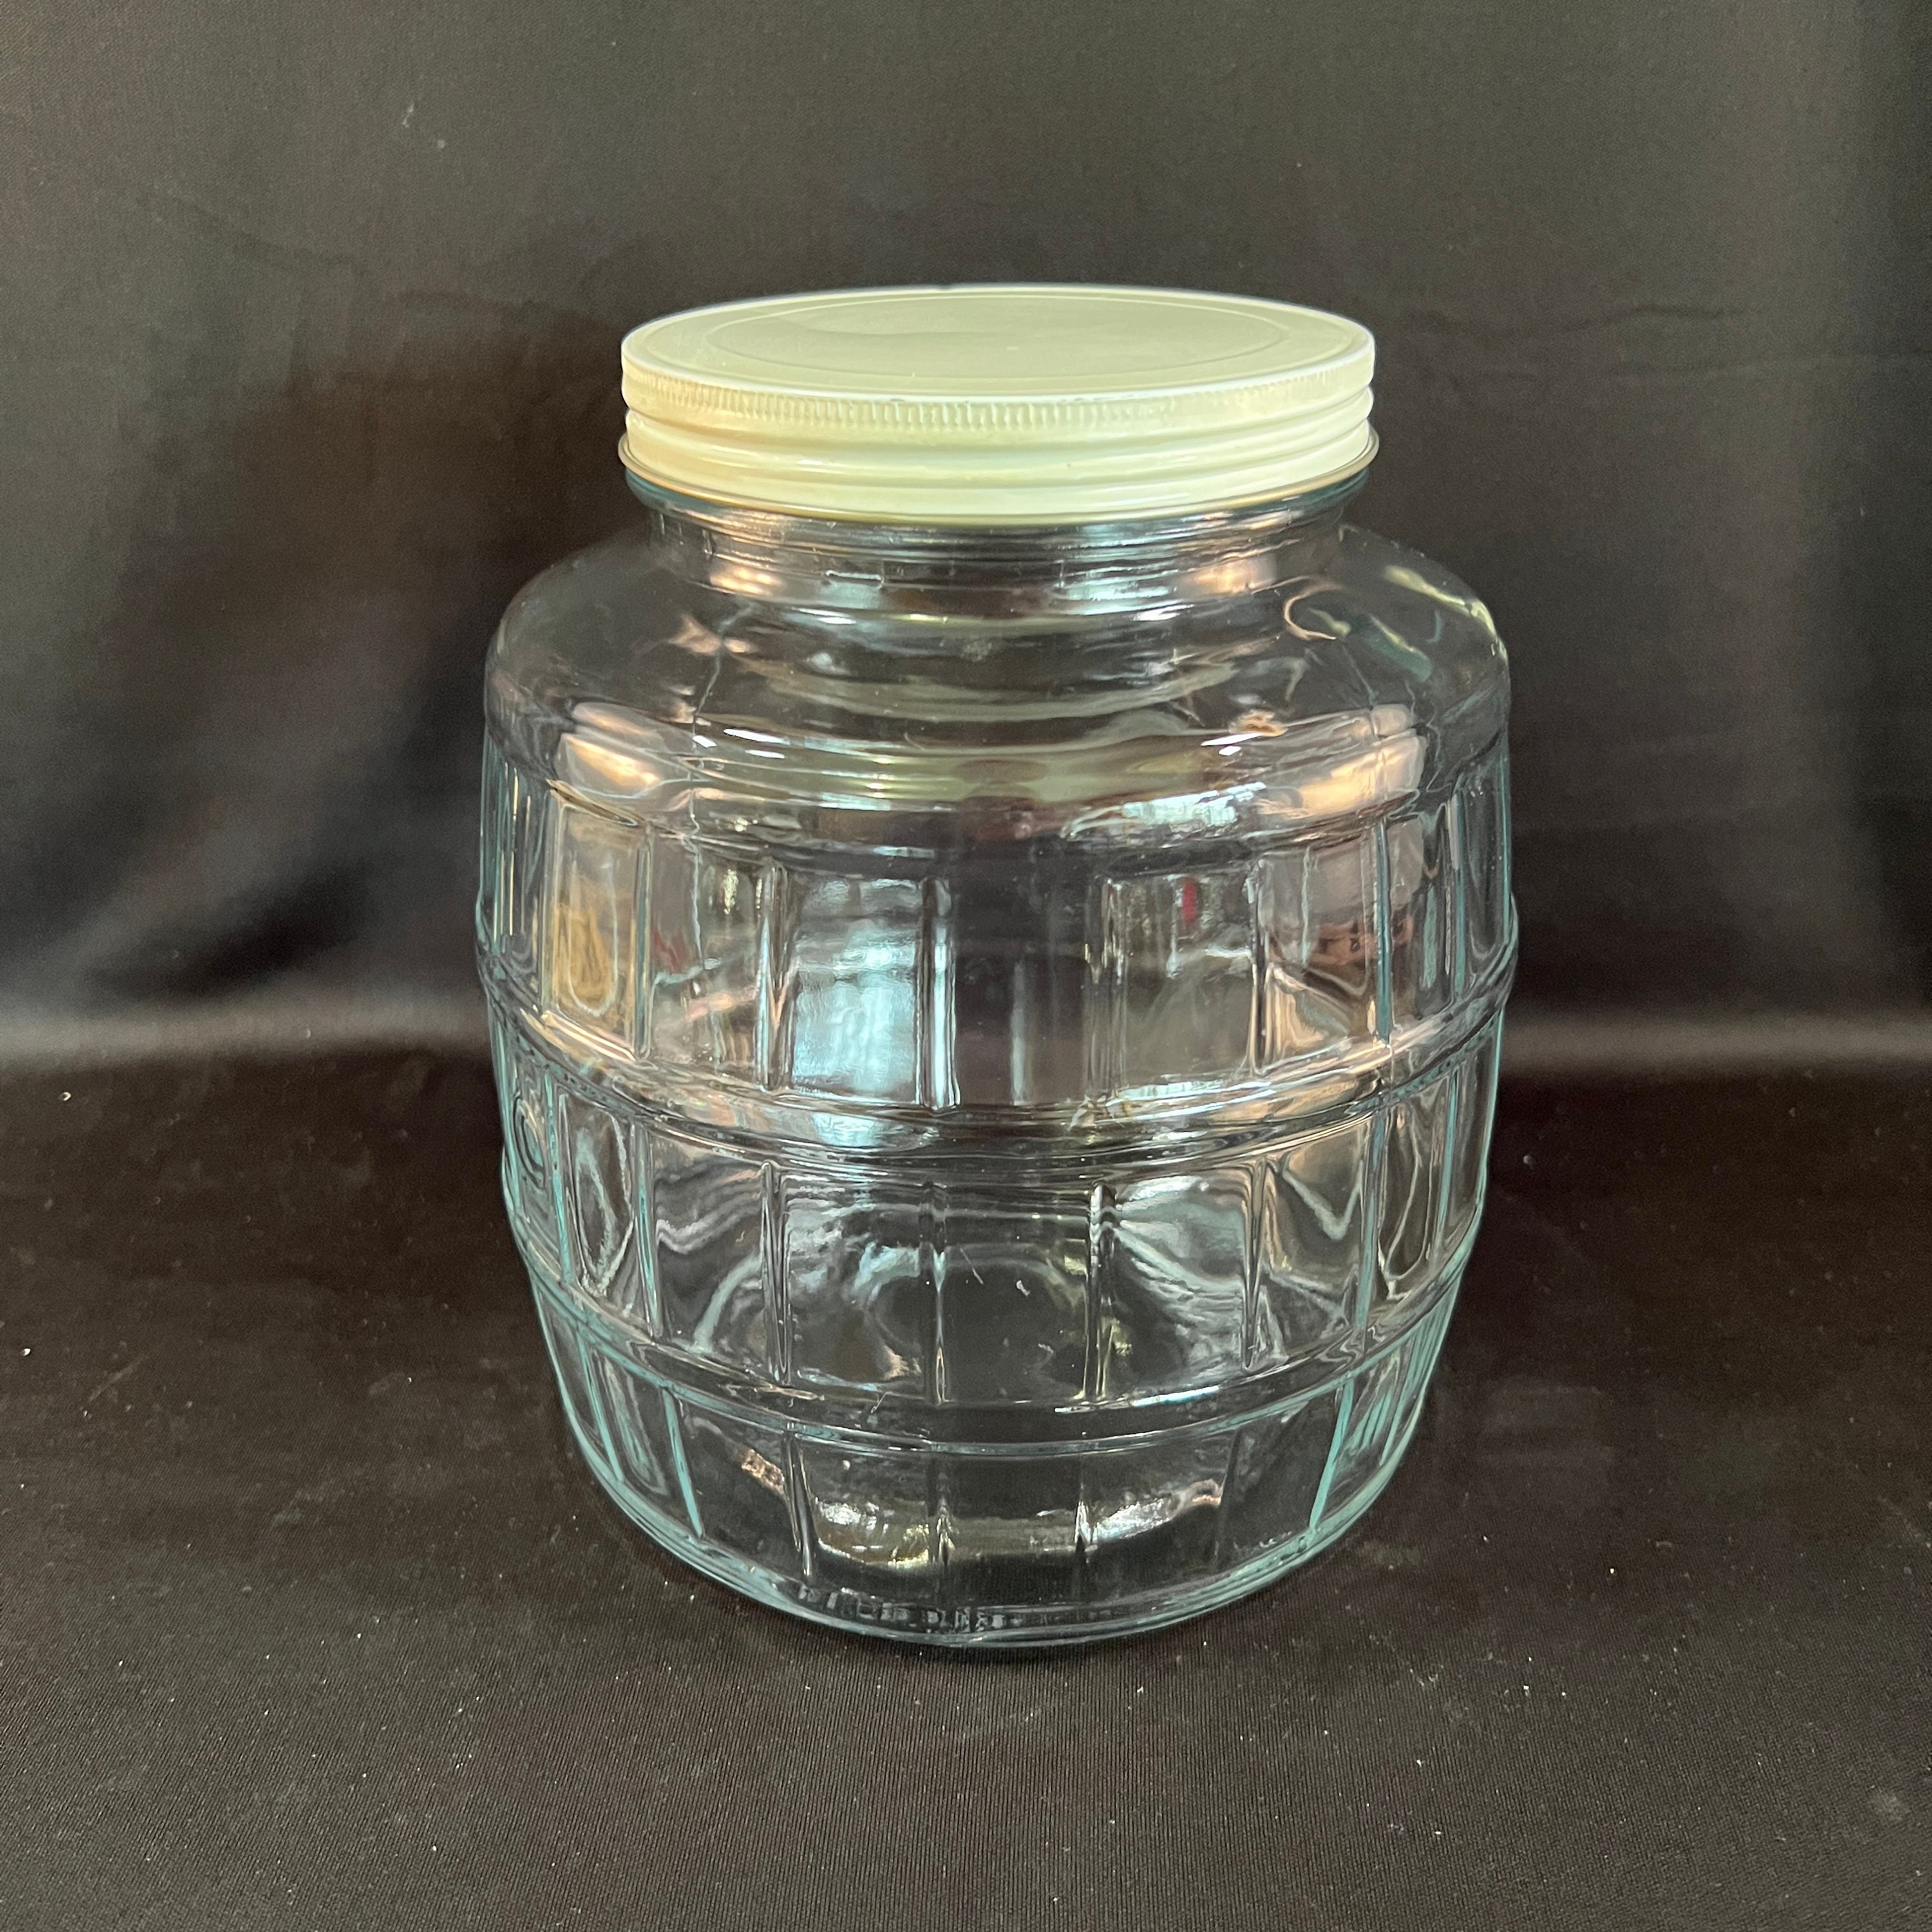 VTG Duraglas Large Glass Jar Keg Barrel Style w/ Lid & Wooden